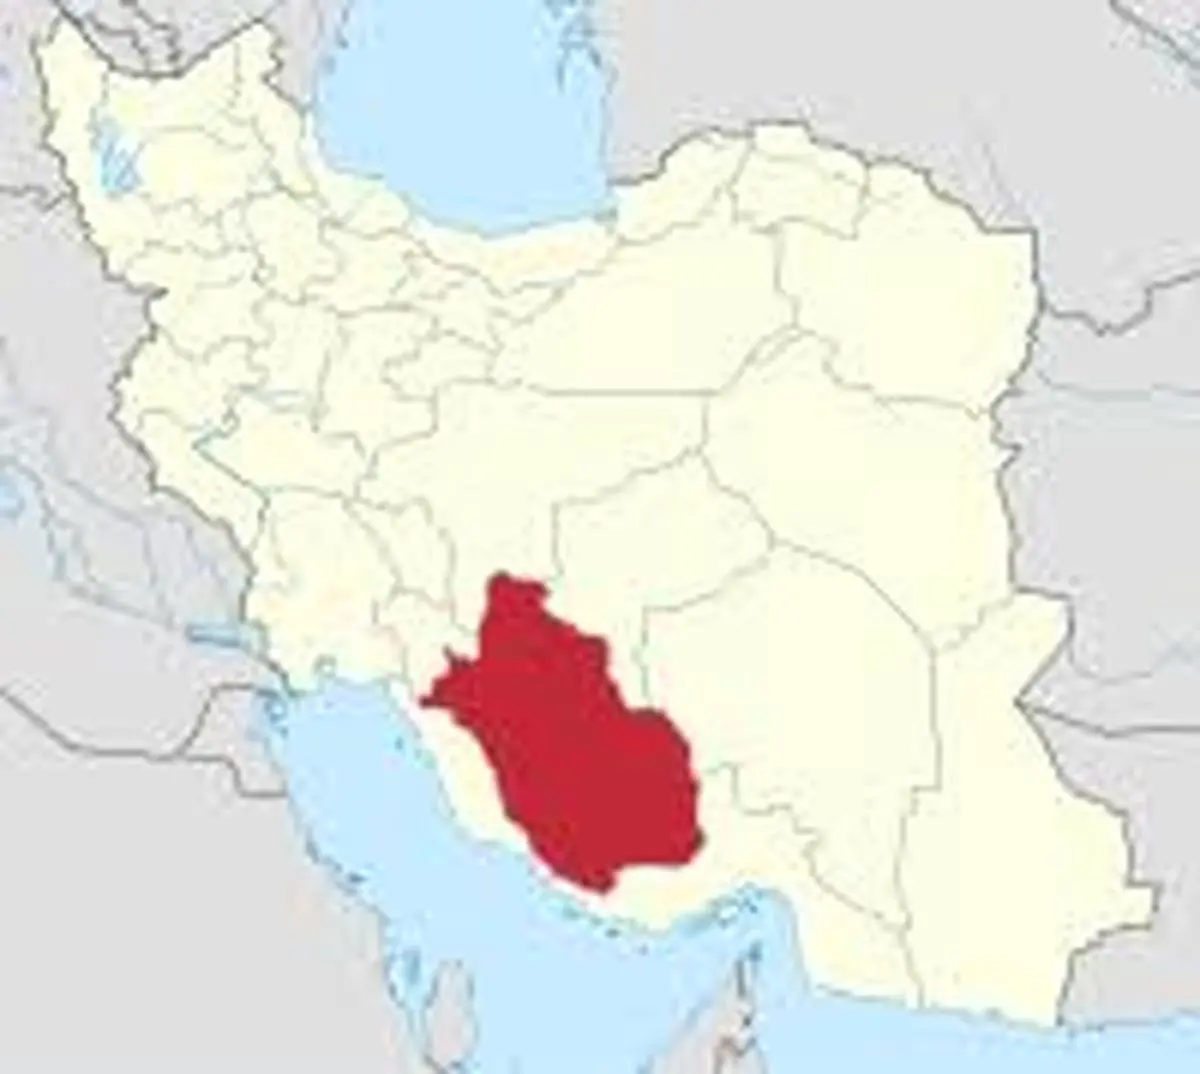  استان فارس  |   کتابخانه عمومی تصرف و به فضای اداری تبدیل شد